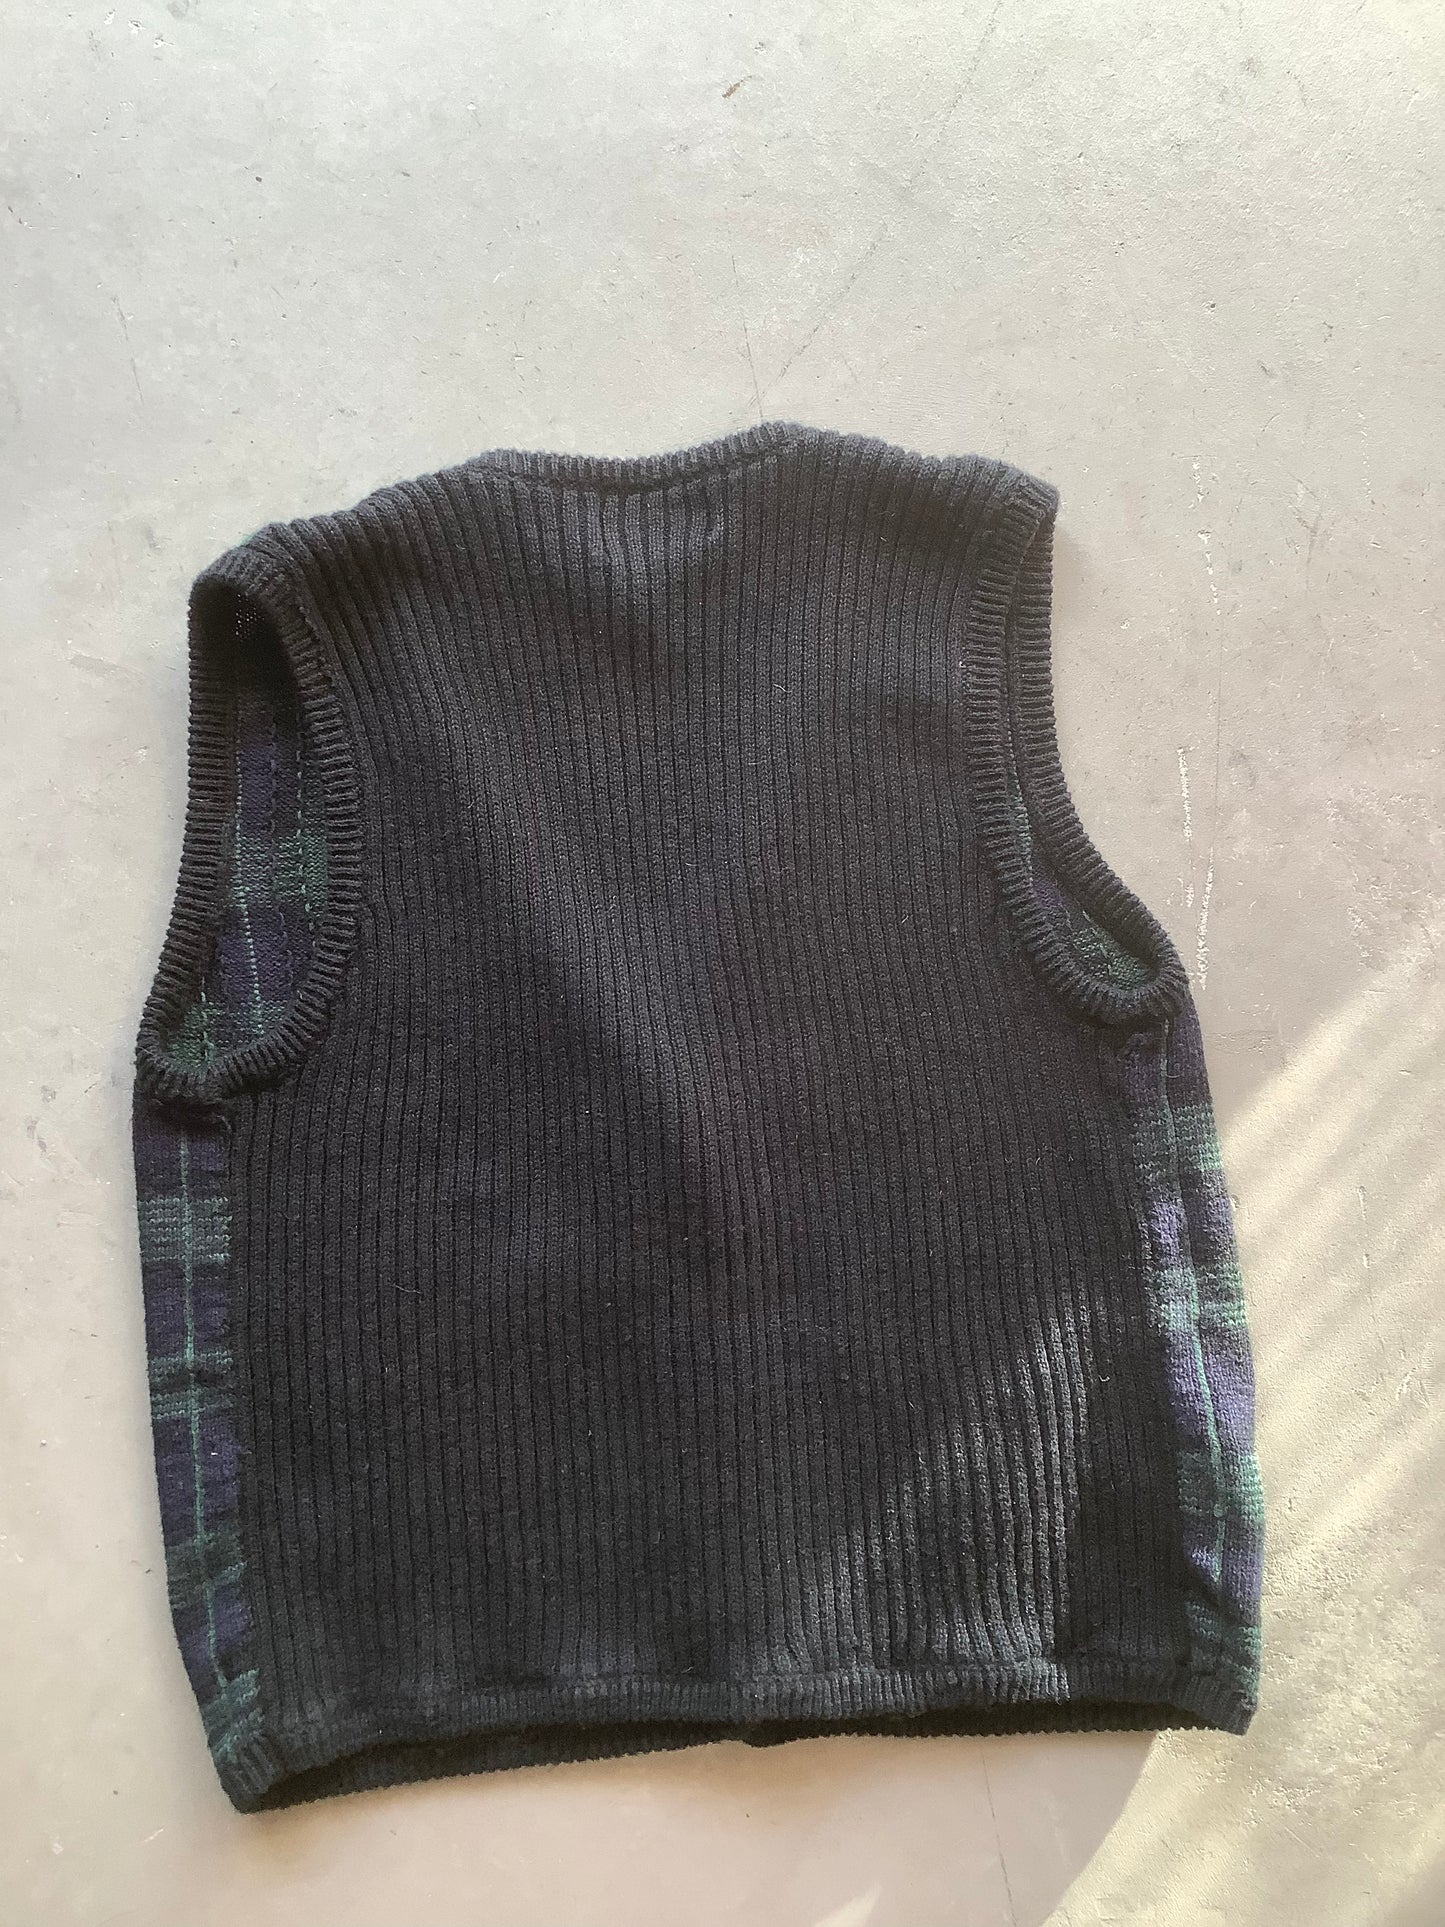 Plaid cotton sweater vest